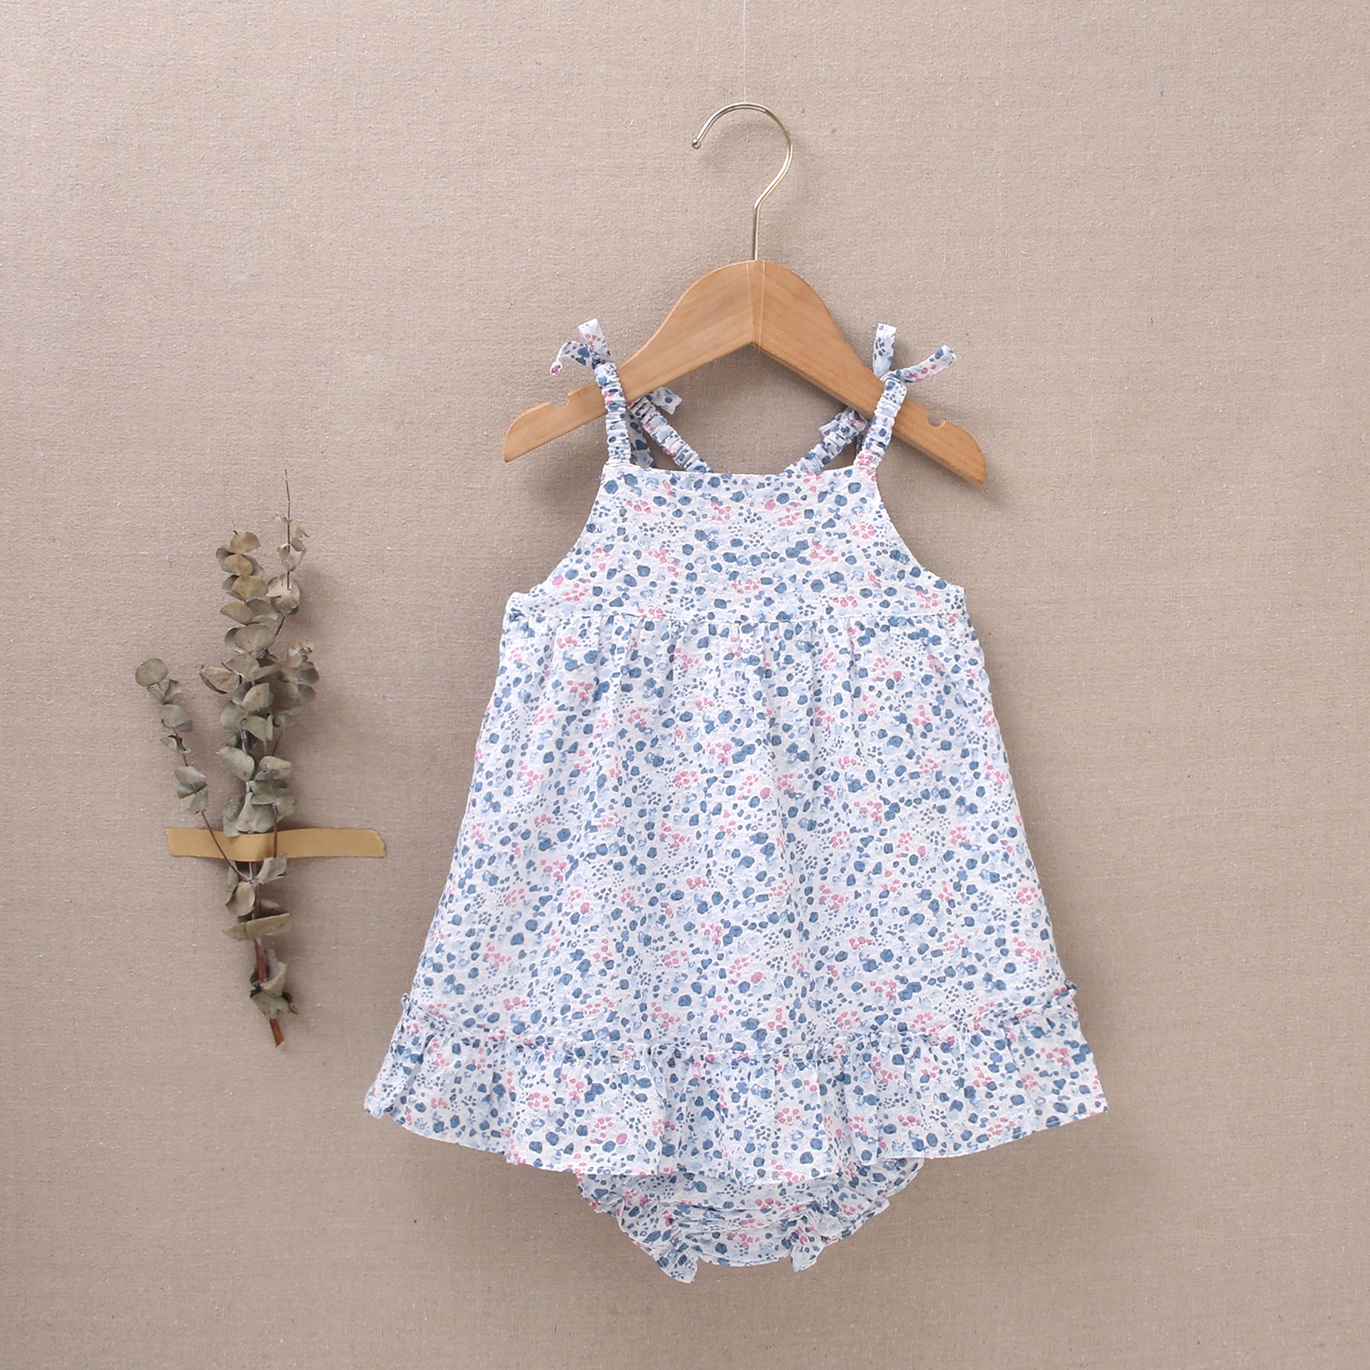 Imagen de Vestido de bebé niña con cubrepañal estampado de flores en tonos azules